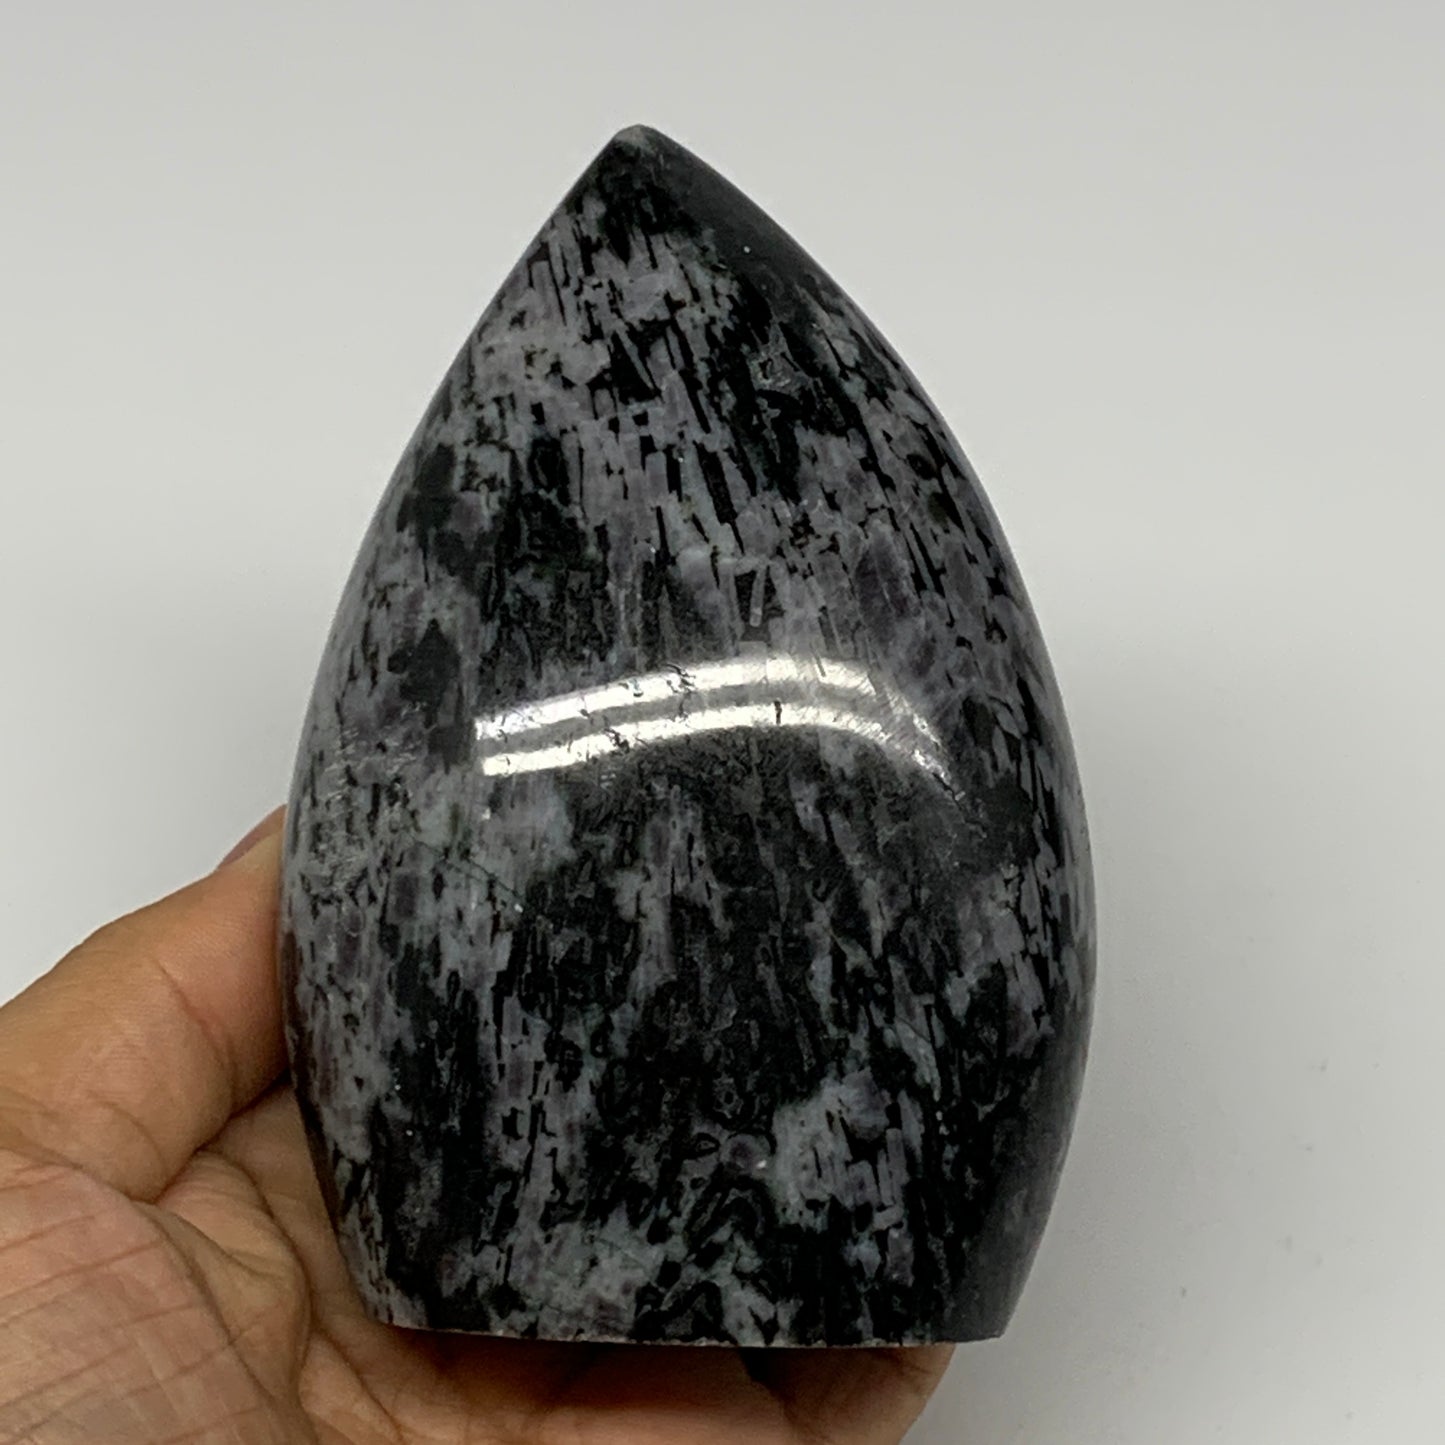 580g, 4.3"x2.9"x1.8" Indigo Gabro Merlinite Freeform Polished @Madagascar, B1820